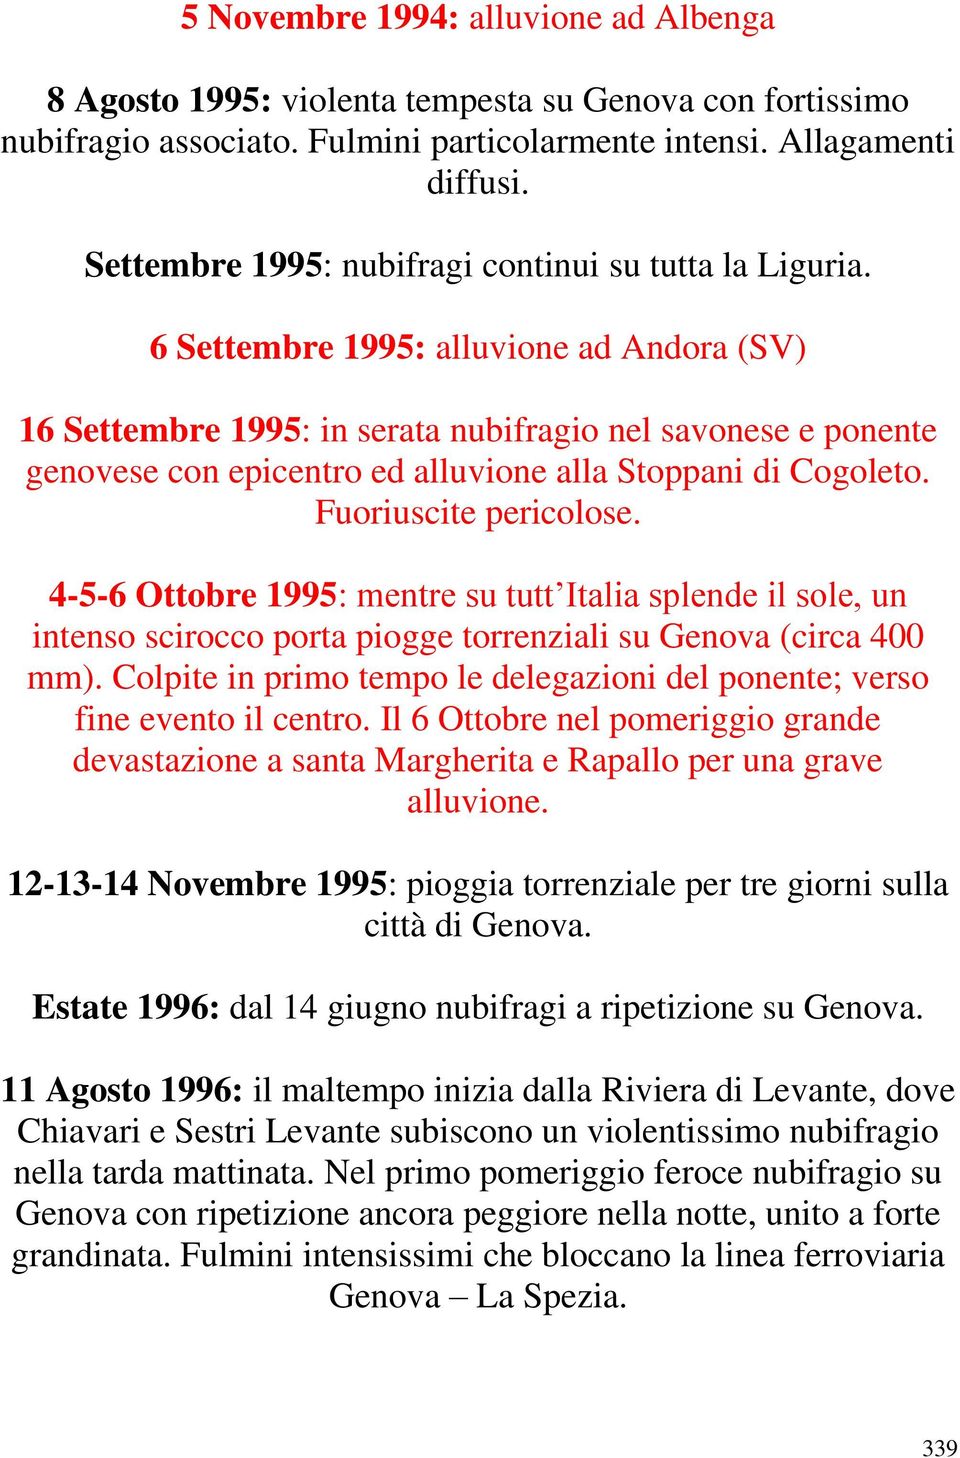 6 Settembre 1995: alluvione ad Andora (SV) 16 Settembre 1995: in serata nubifragio nel savonese e ponente genovese con epicentro ed alluvione alla Stoppani di Cogoleto. Fuoriuscite pericolose.